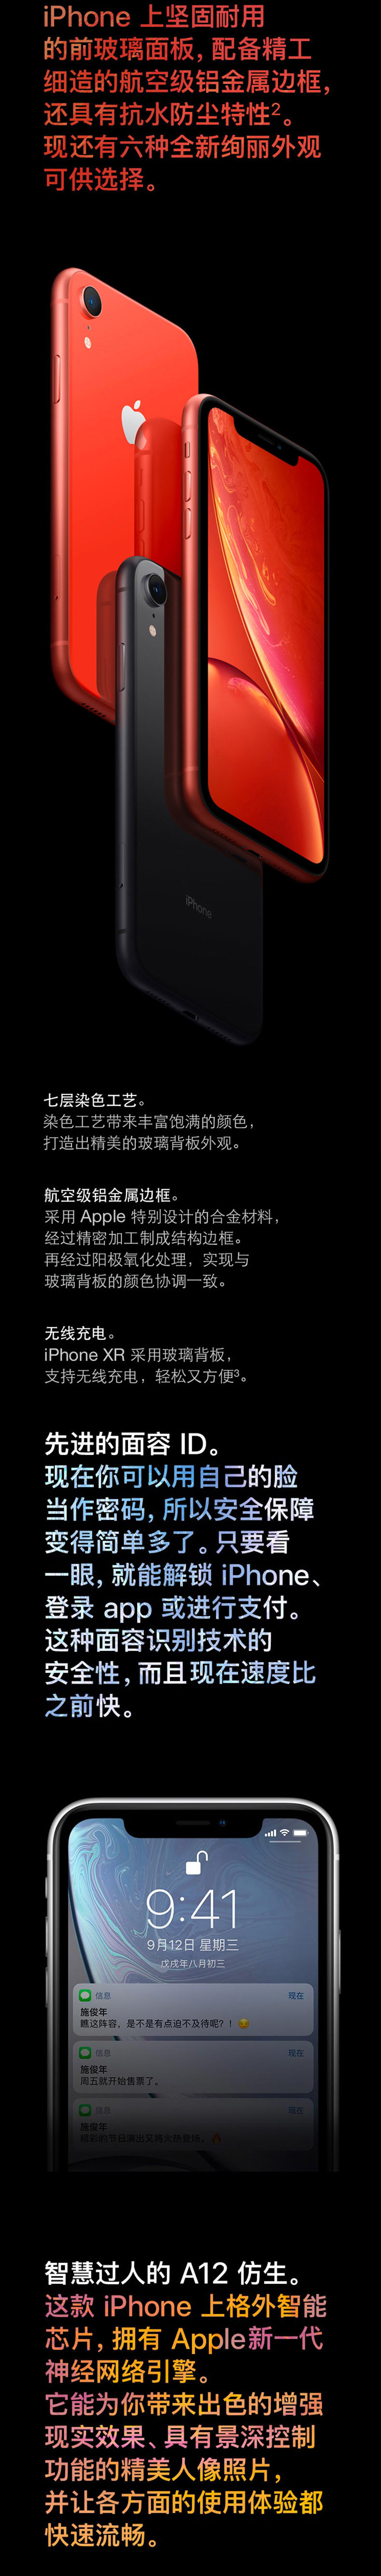 苹果/APPLE  iPhone XR (A2108) 128GB 白色 全网通4G手机 双卡双待